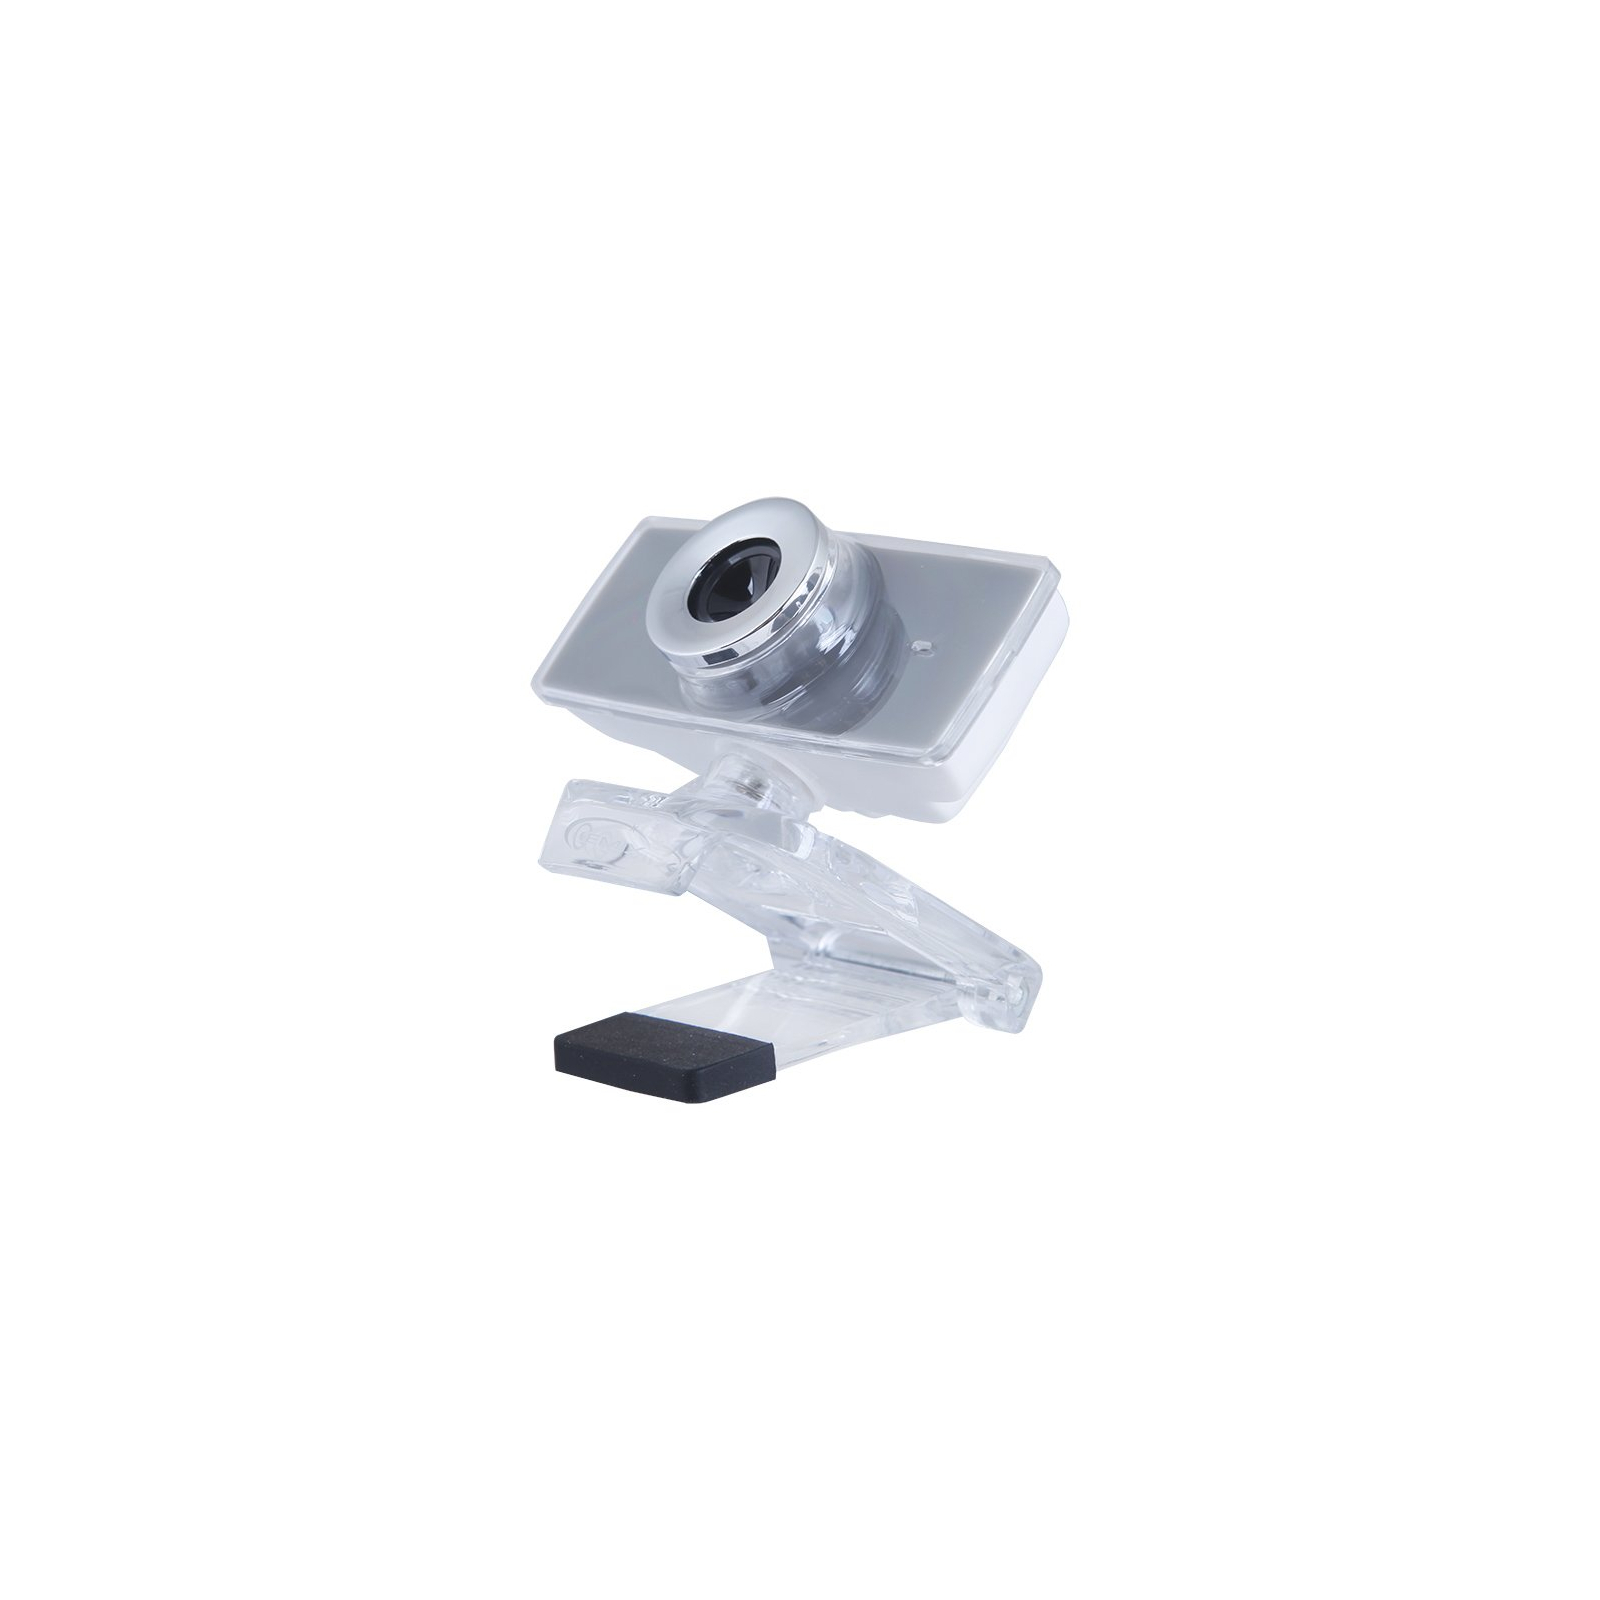 Веб-камера Gemix F9 gray изображение 2